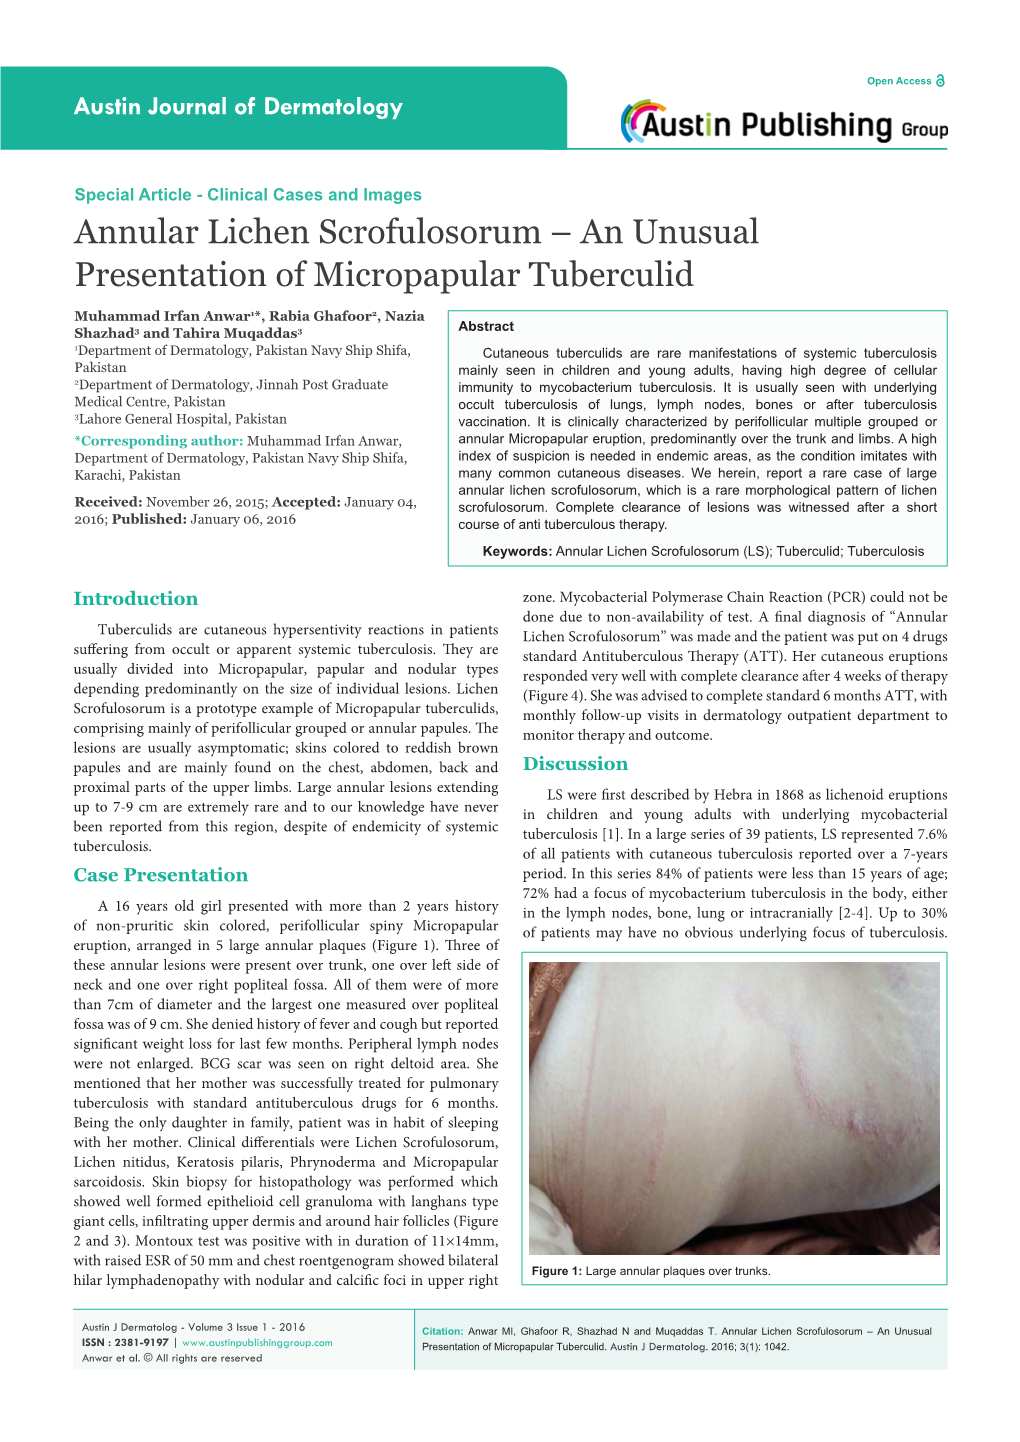 Annular Lichen Scrofulosorum – an Unusual Presentation of Micropapular Tuberculid